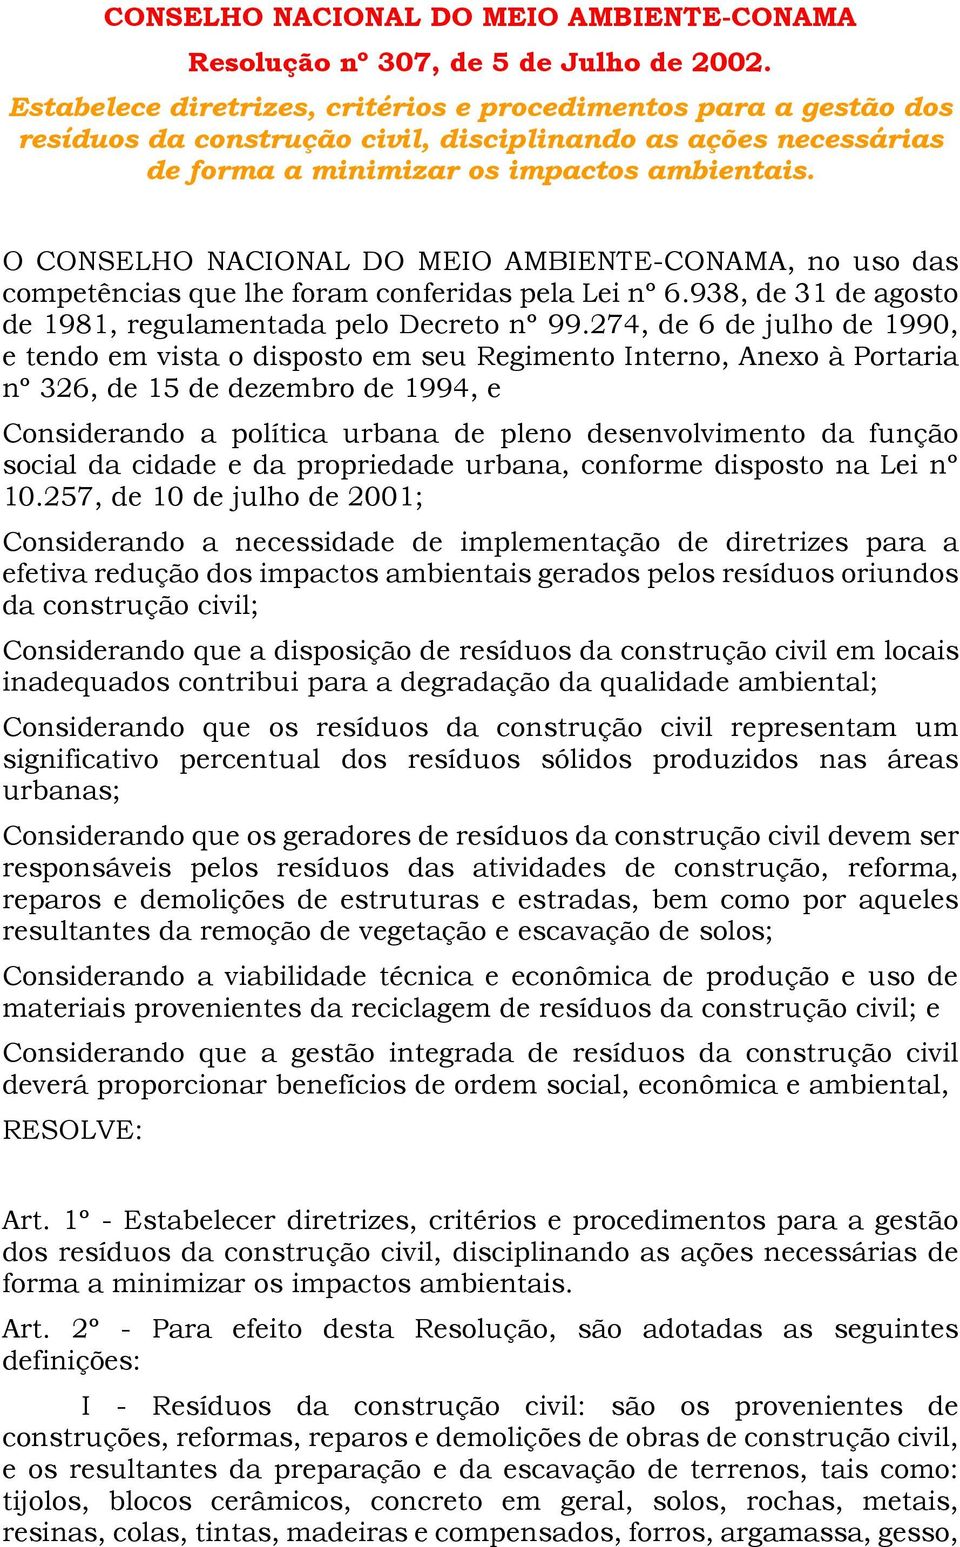 O CONSELHO NACIONAL DO MEIO AMBIENTE-CONAMA, no uso das competências que lhe foram conferidas pela Lei nº 6.938, de 31 de agosto de 1981, regulamentada pelo Decreto nº 99.